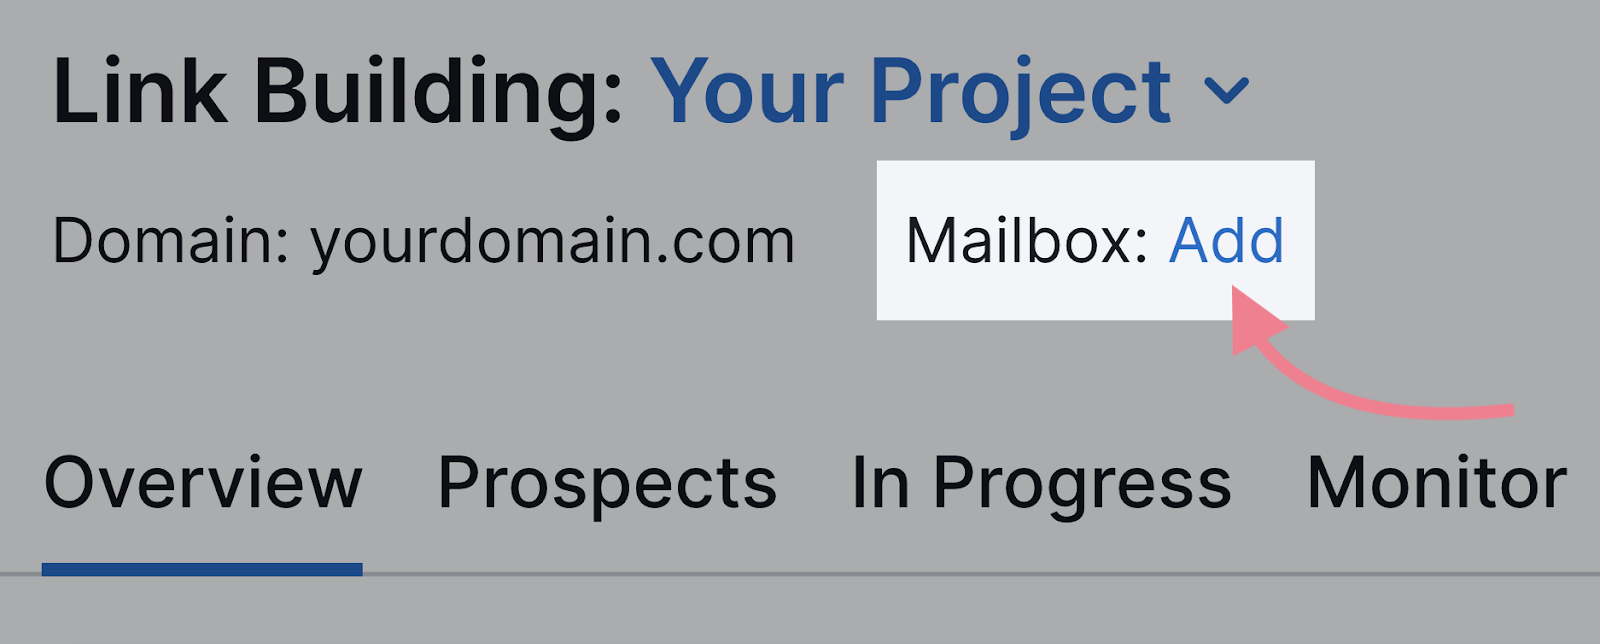 add mailbox button